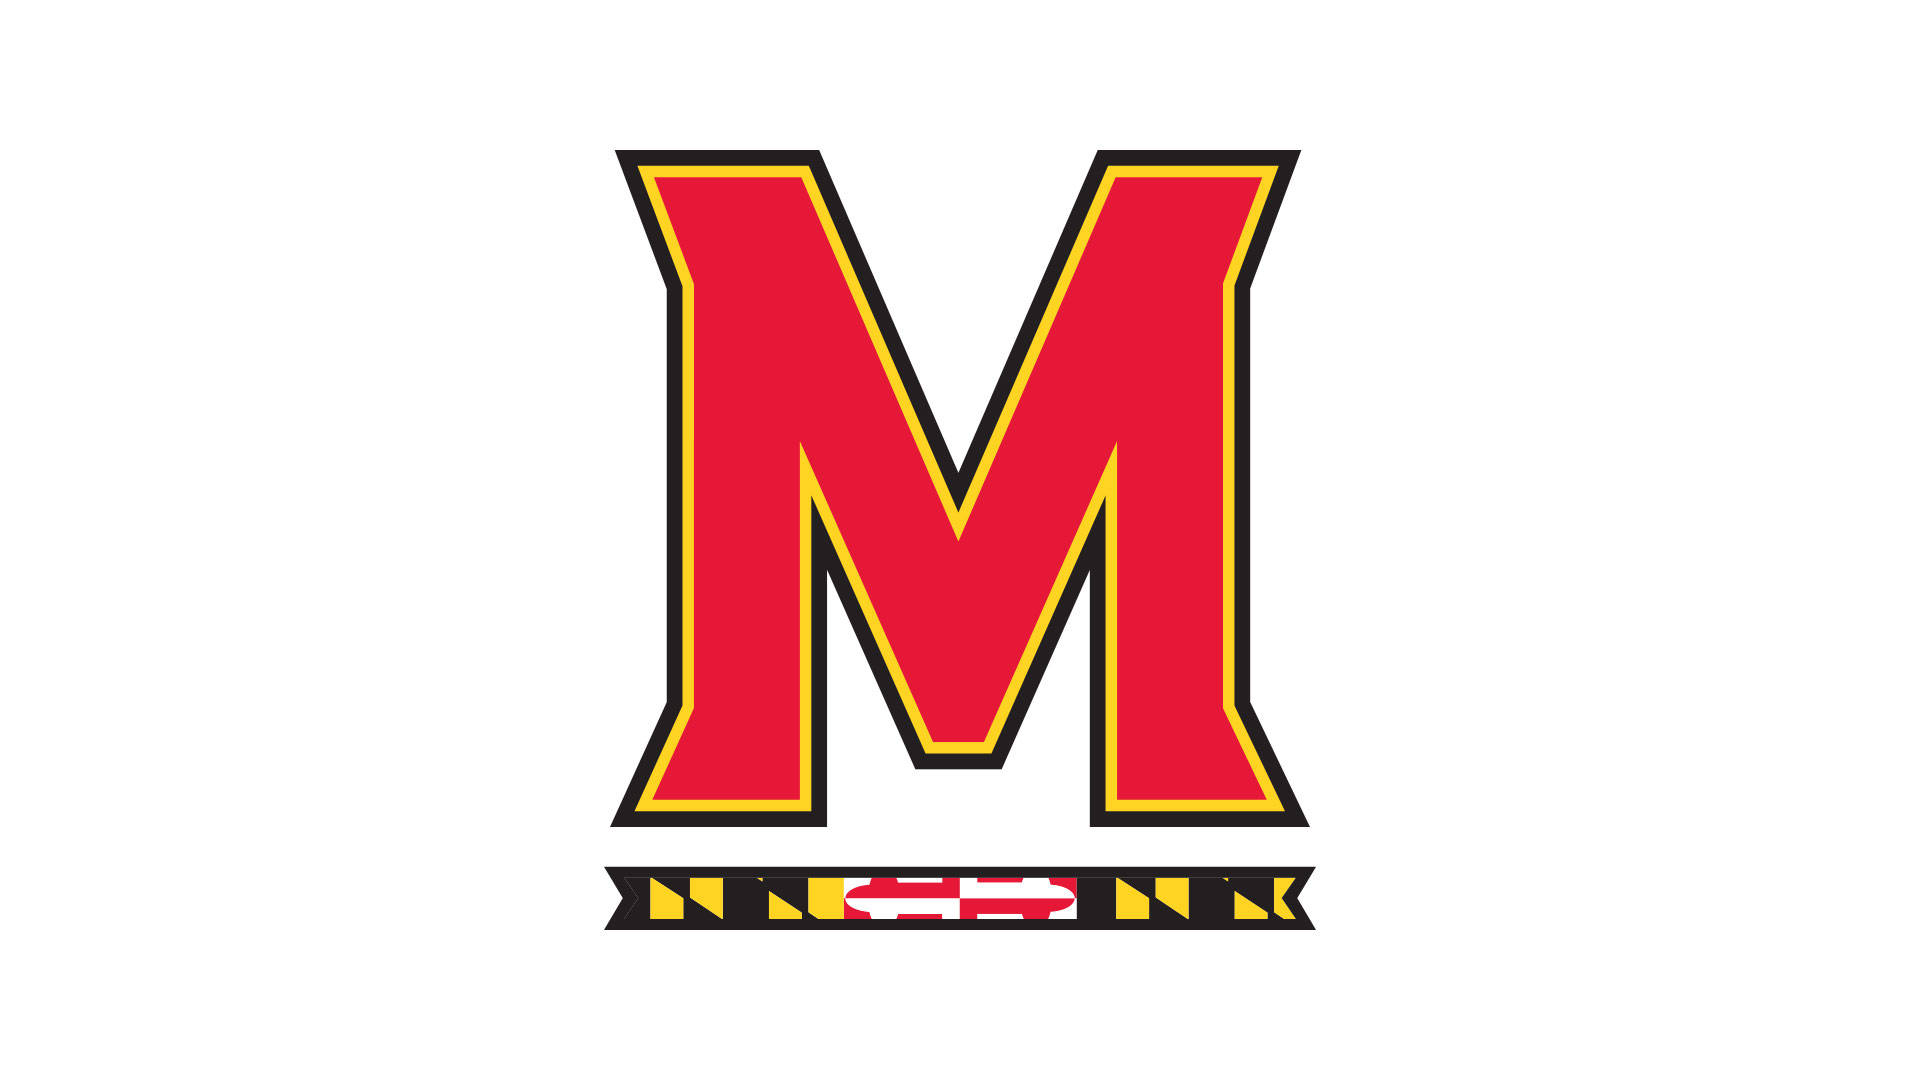 Logode La Universidad De Maryland Con La Bandera. Fondo de pantalla